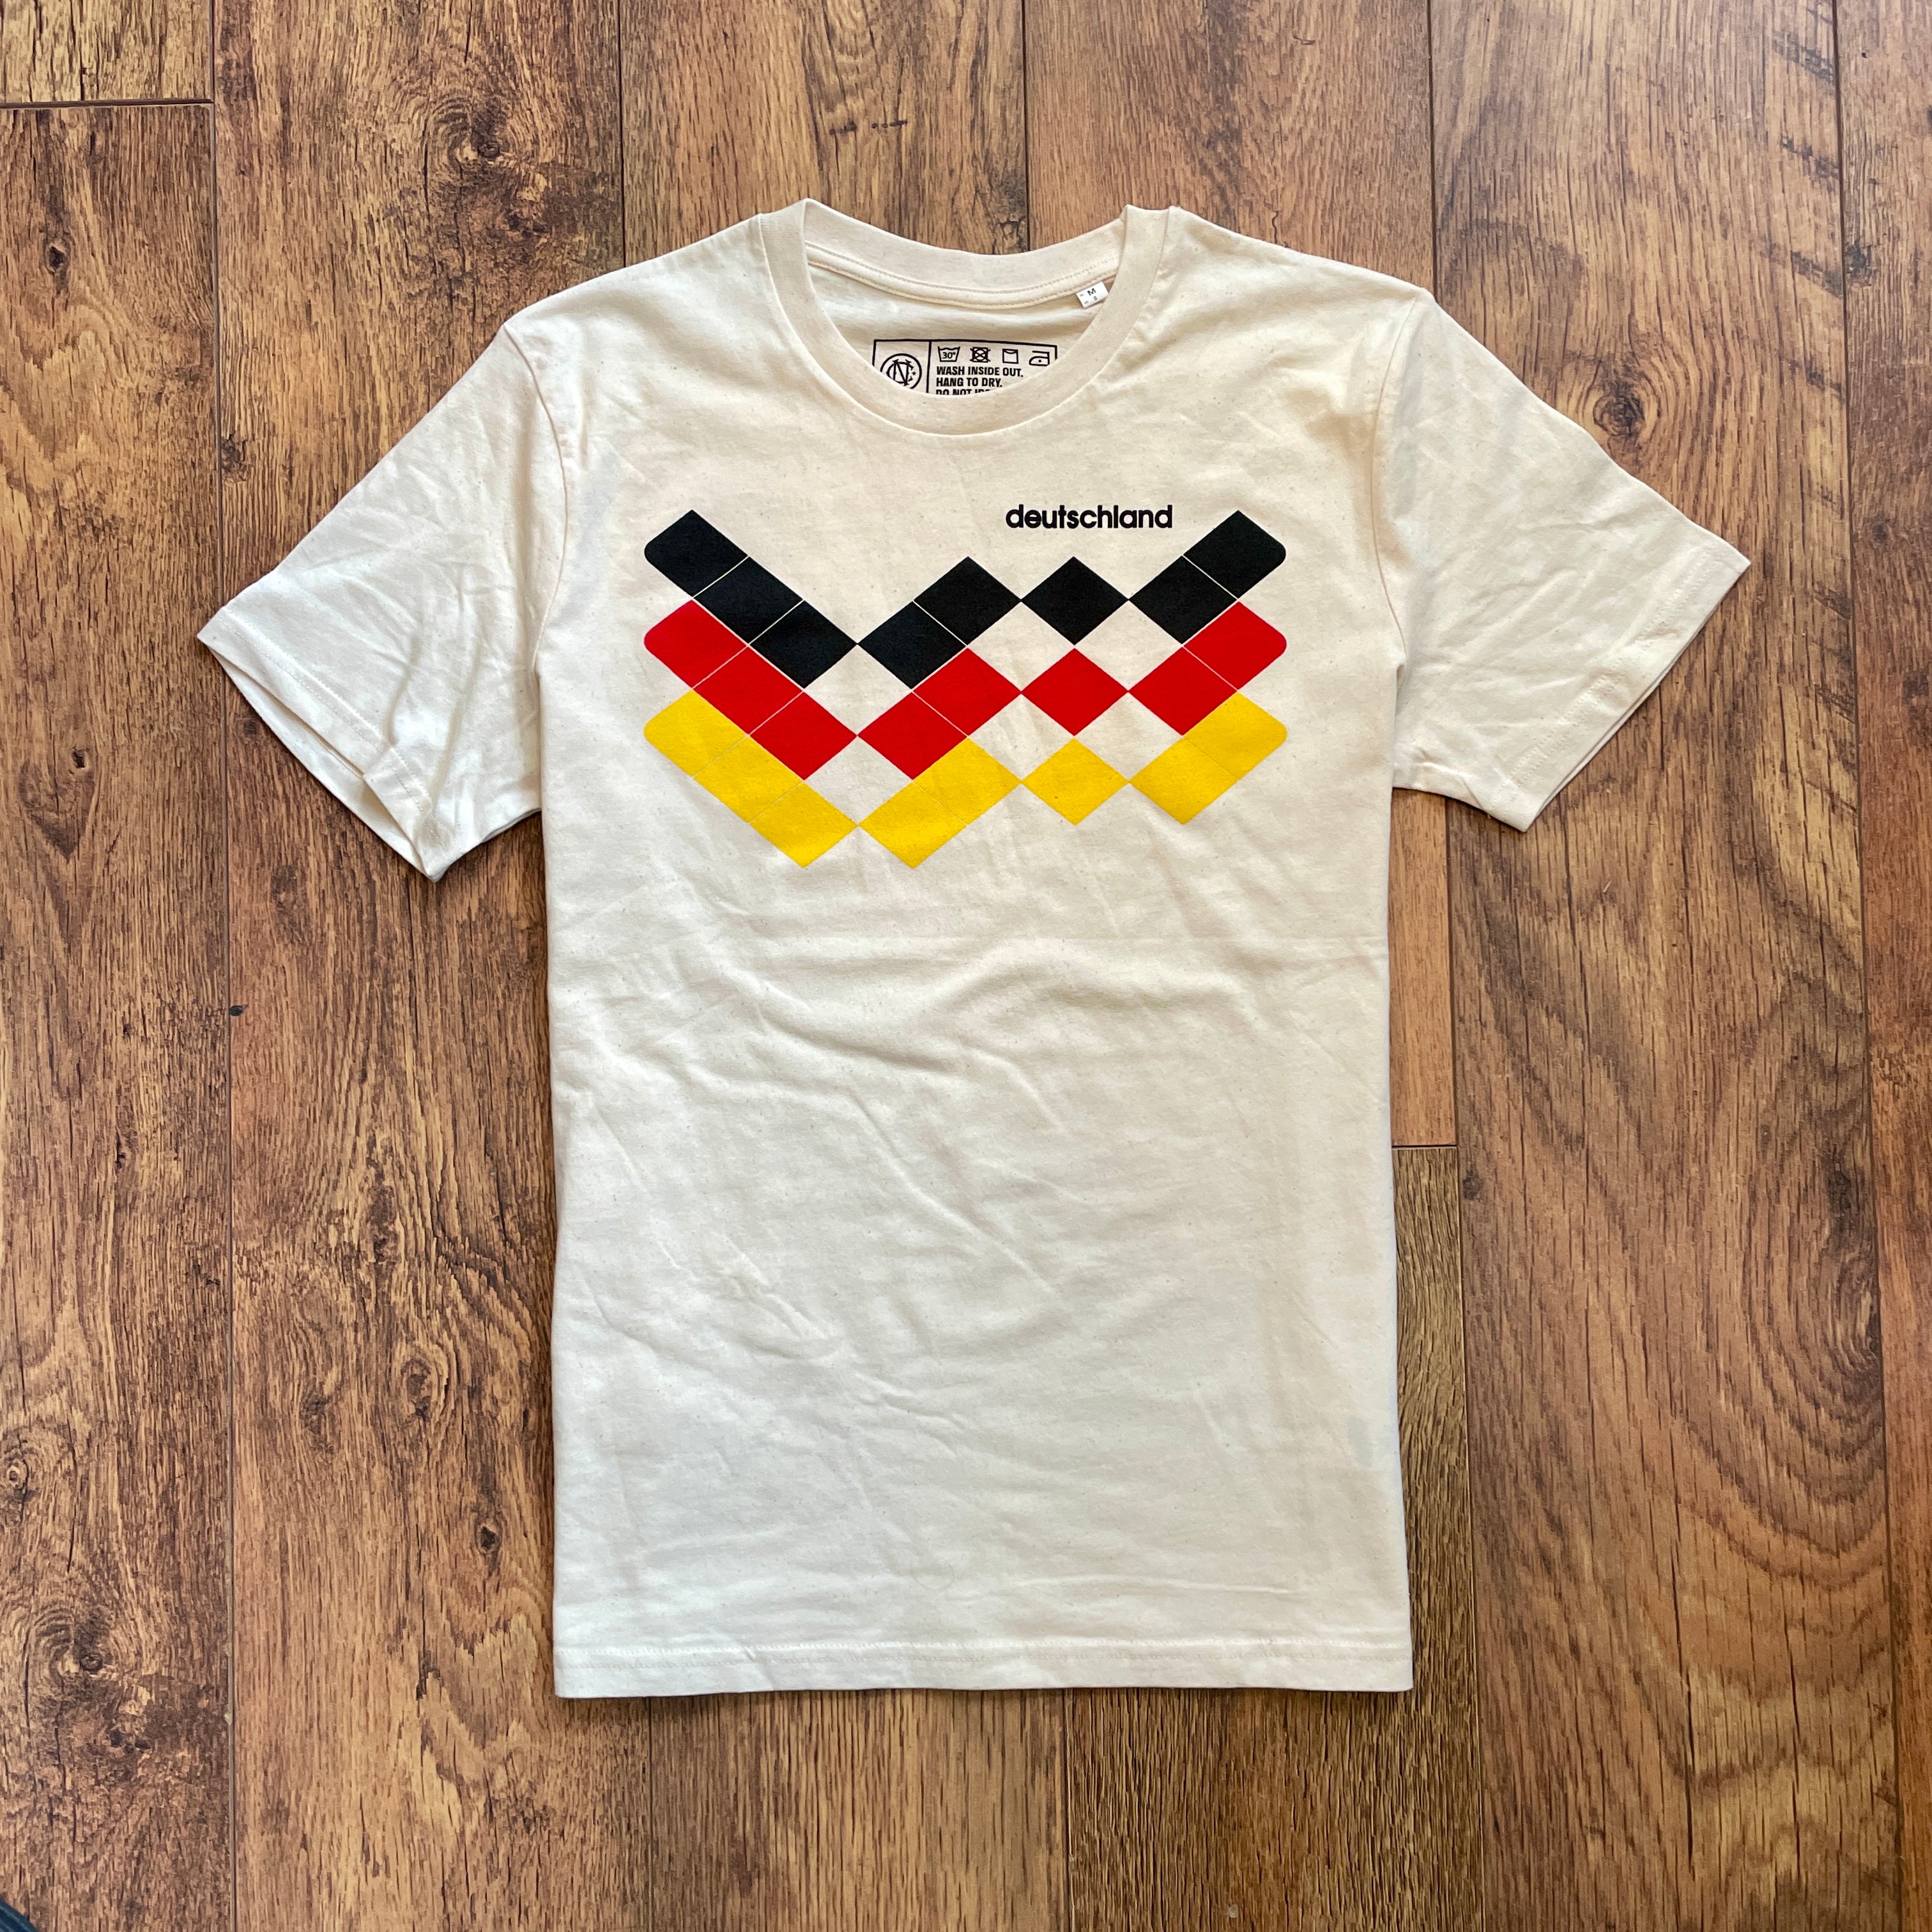 Germany Deutschland 1990 football shirt t-shirt